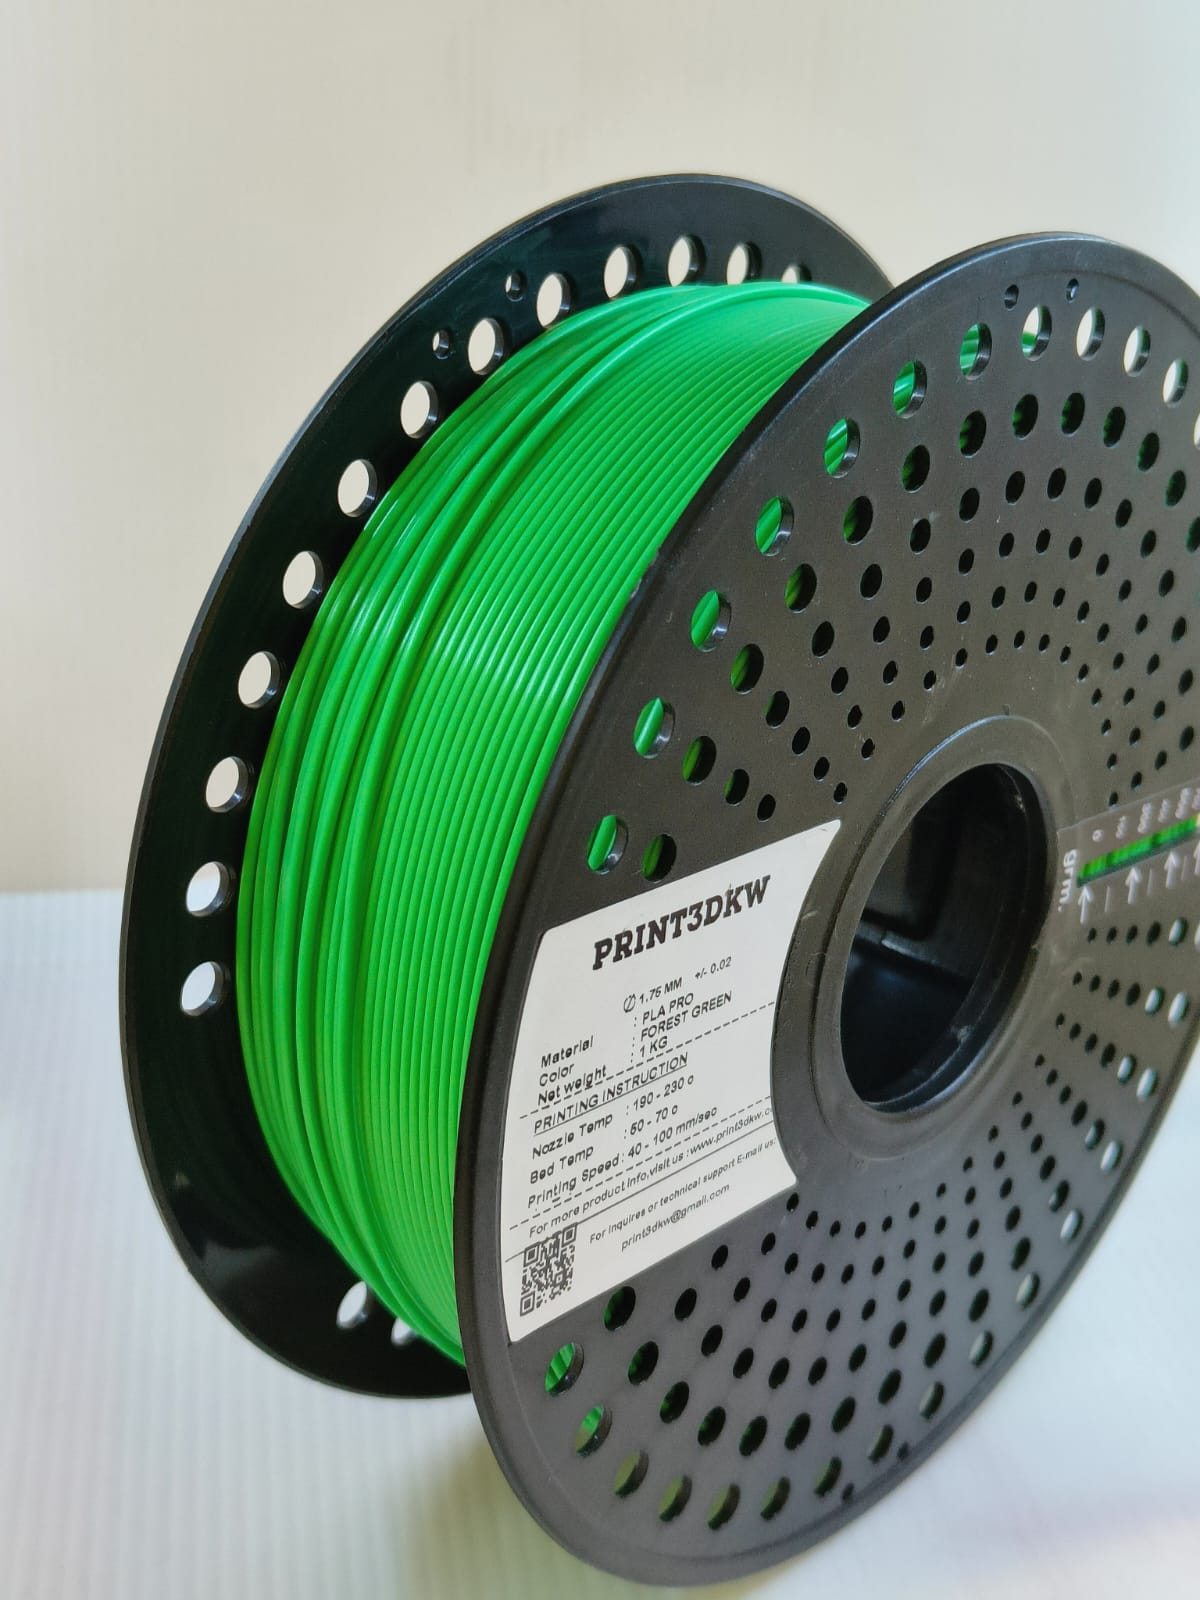 PRINT3DKW PLA PRO 3D Printing Filament Green